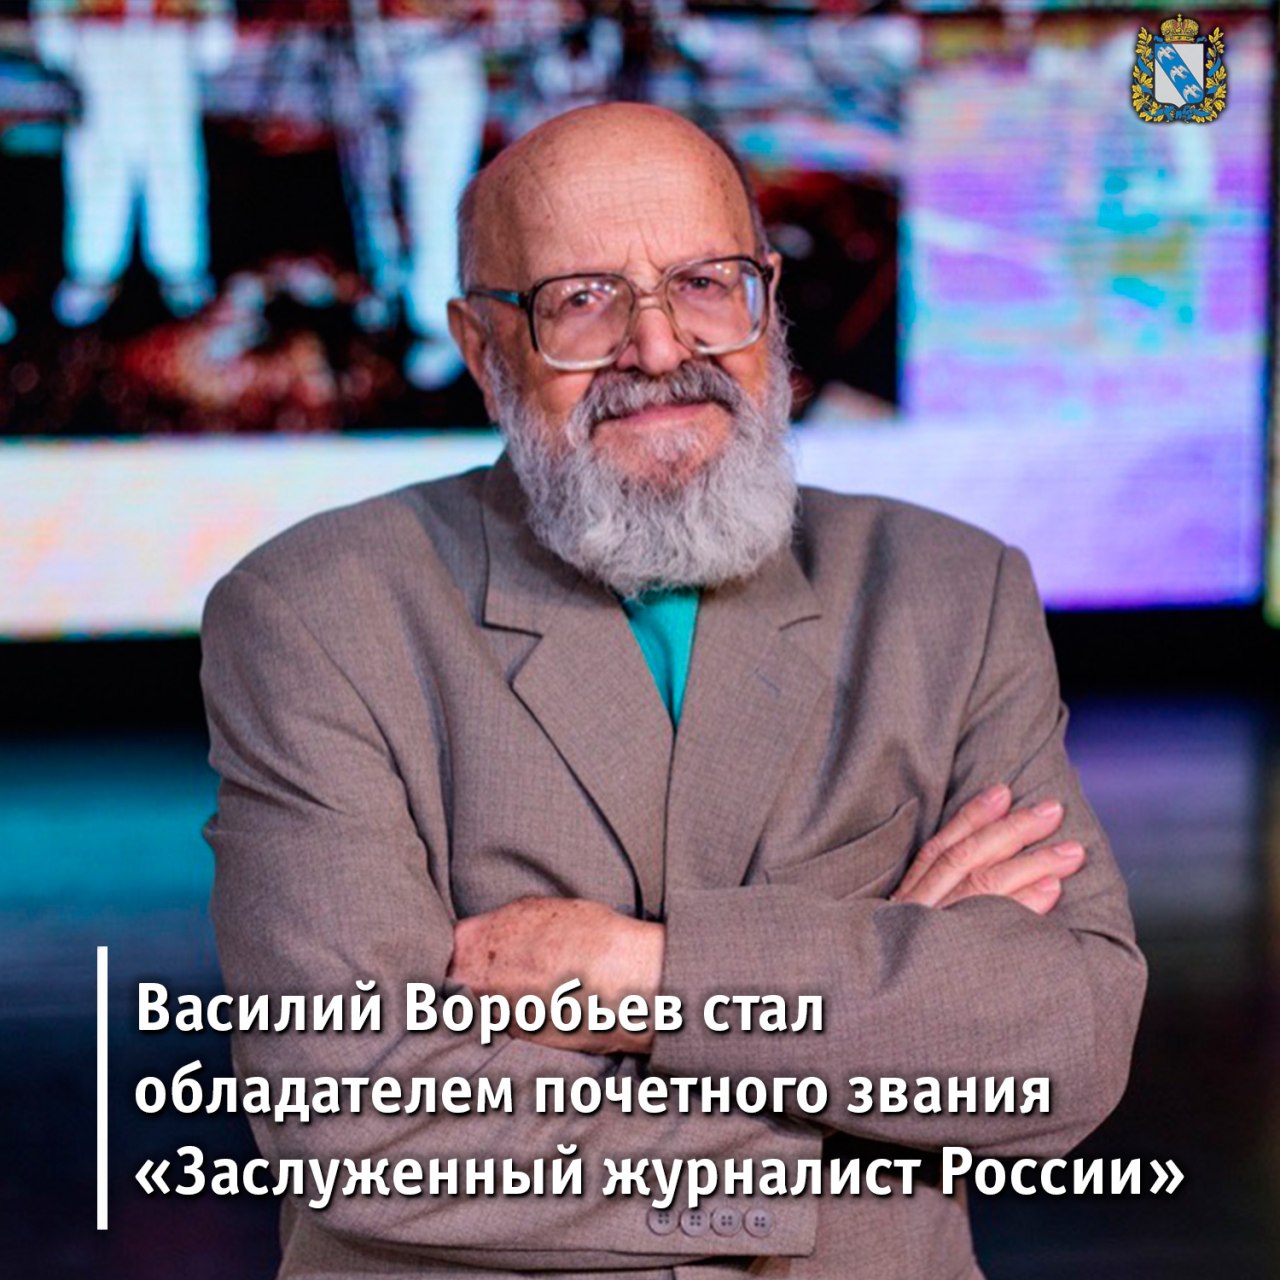 Василий Гурьевич Воробьев